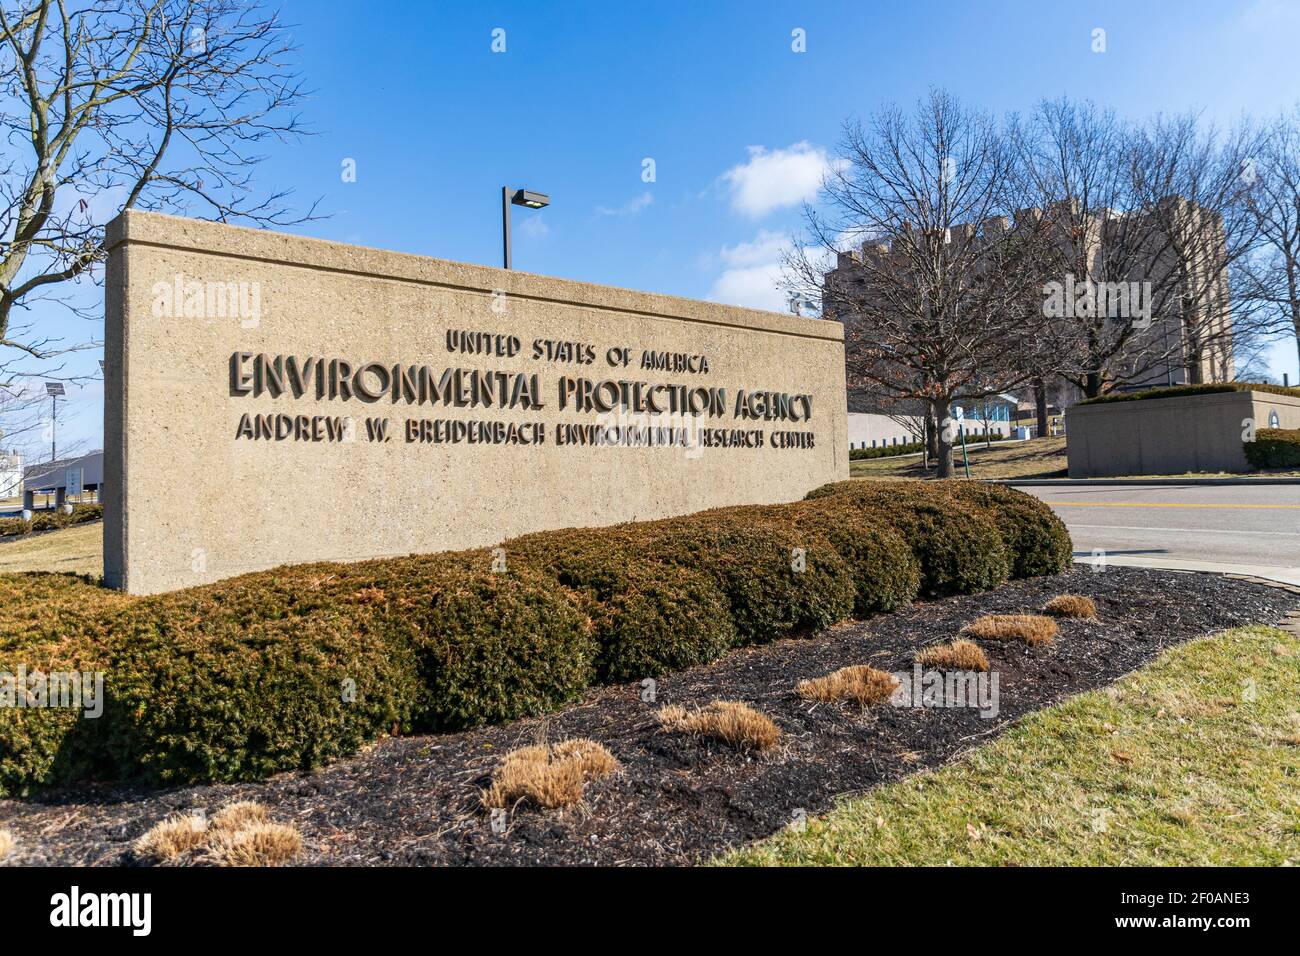 Cincinnati, OH - 27 de febrero de 2021: Agencia de Protección Ambiental de los Estados Unidos Andrew W. Breidenbach Centro de Investigación Ambiental Foto de stock